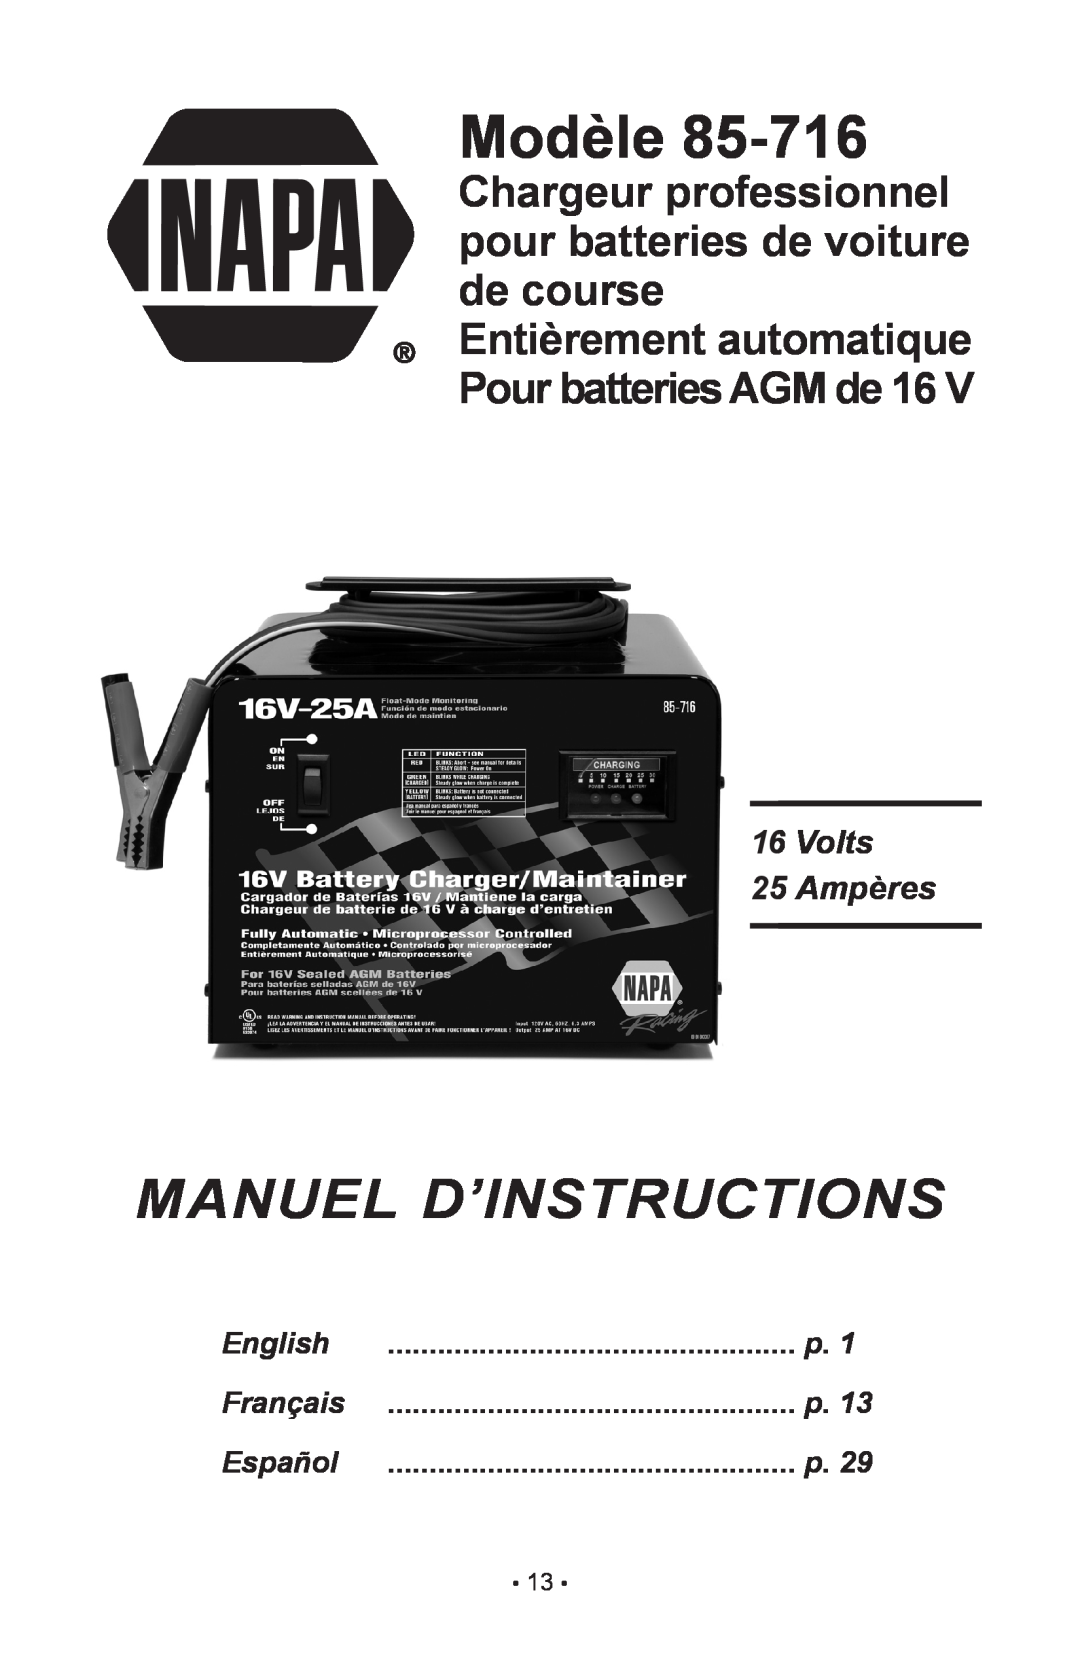 Schumacher 85-716 instruction manual Modèle, Manuel D’Instructions, Volts 25 Ampères, English, Français, Español 